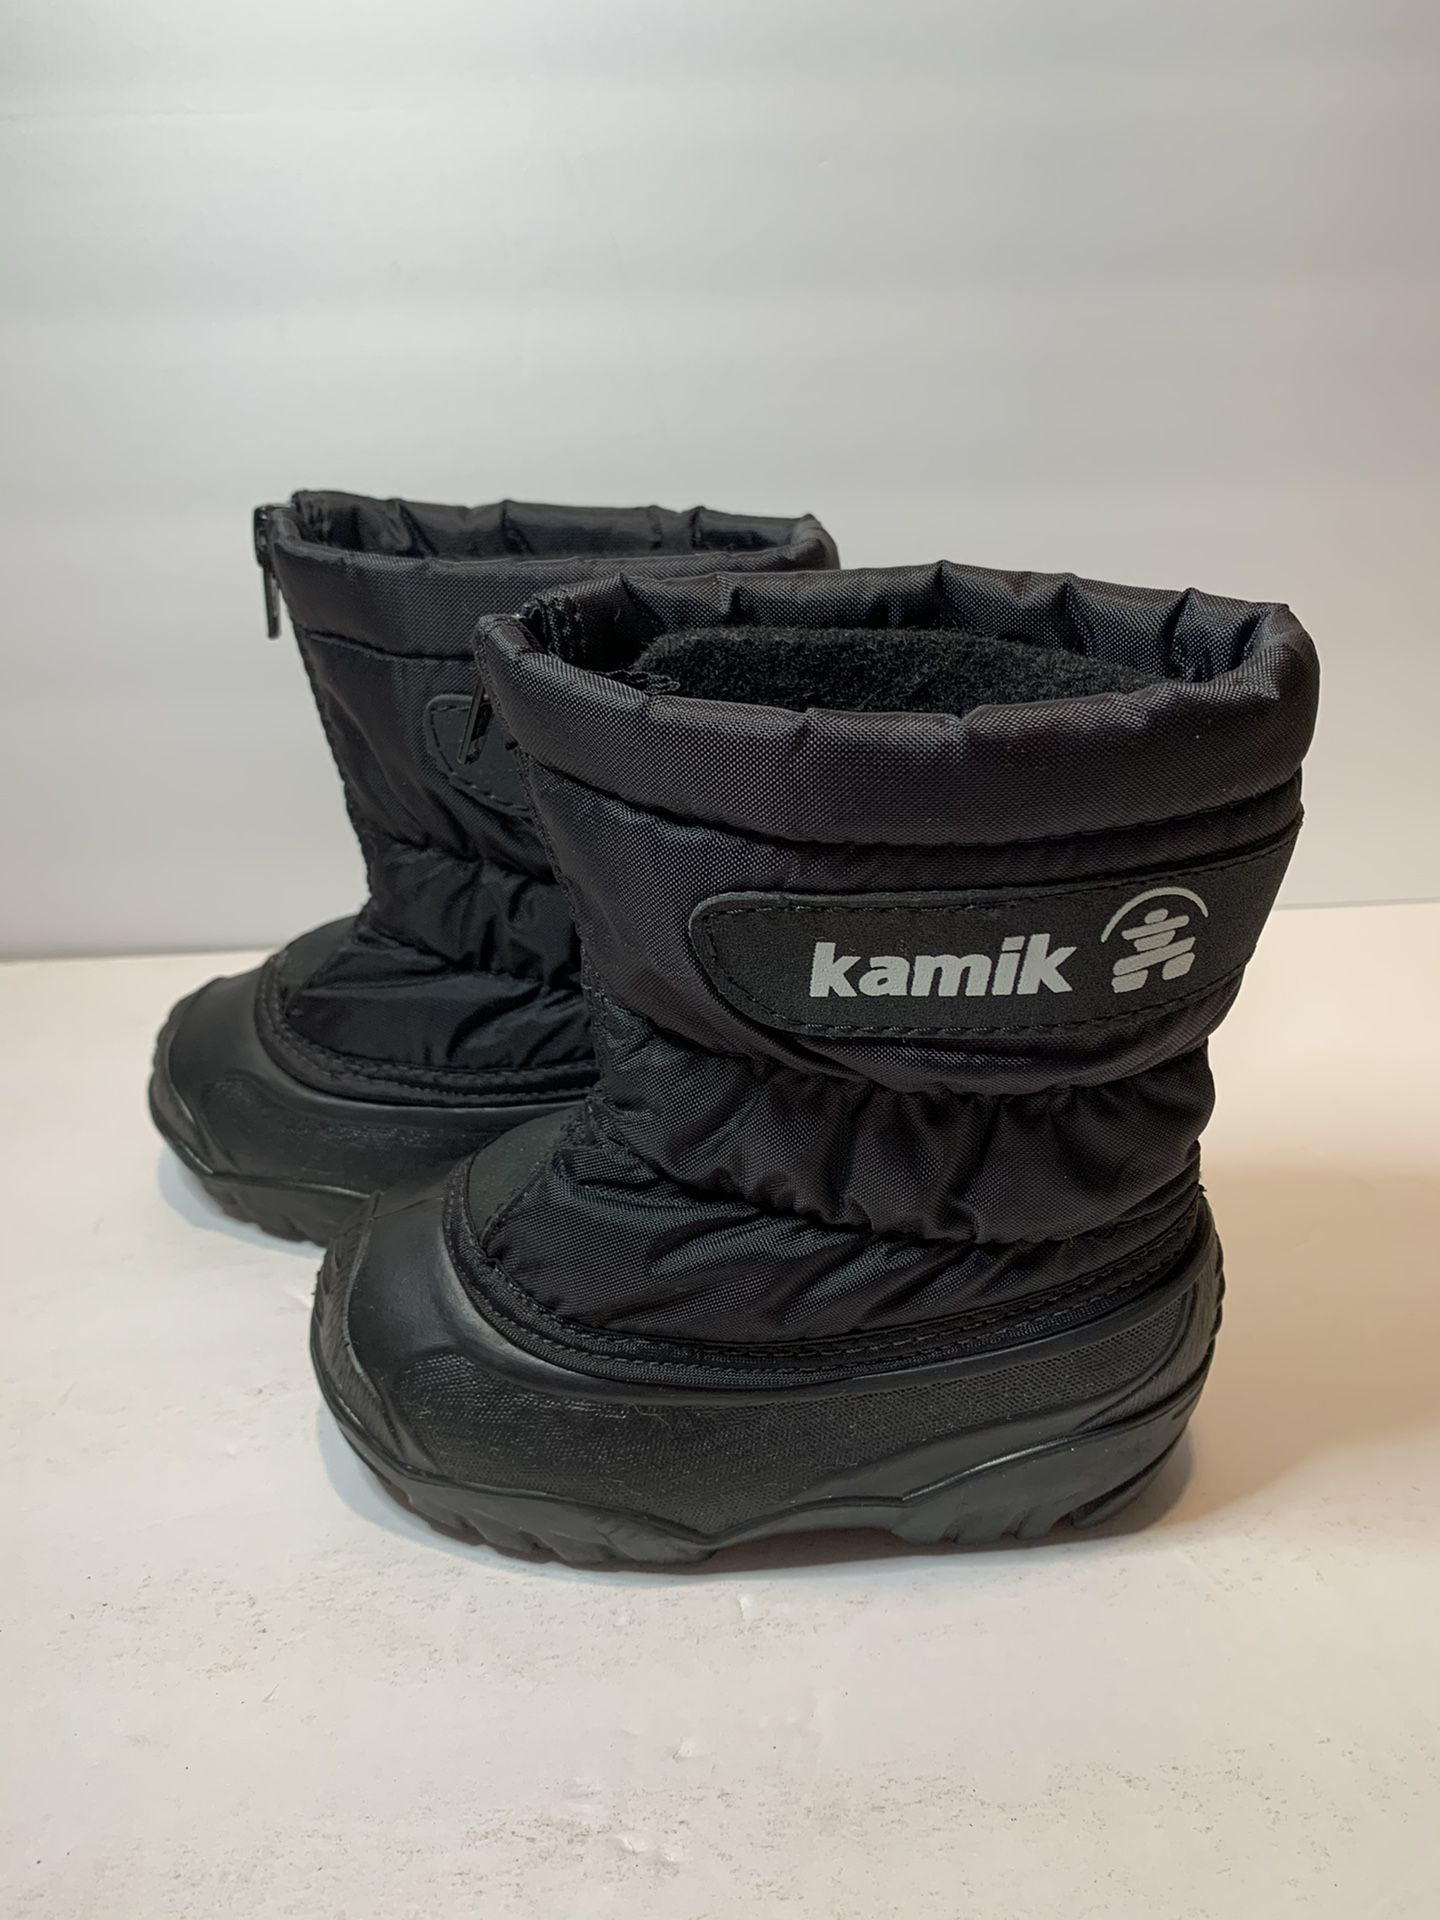 Toddler Kamik Snow Boots